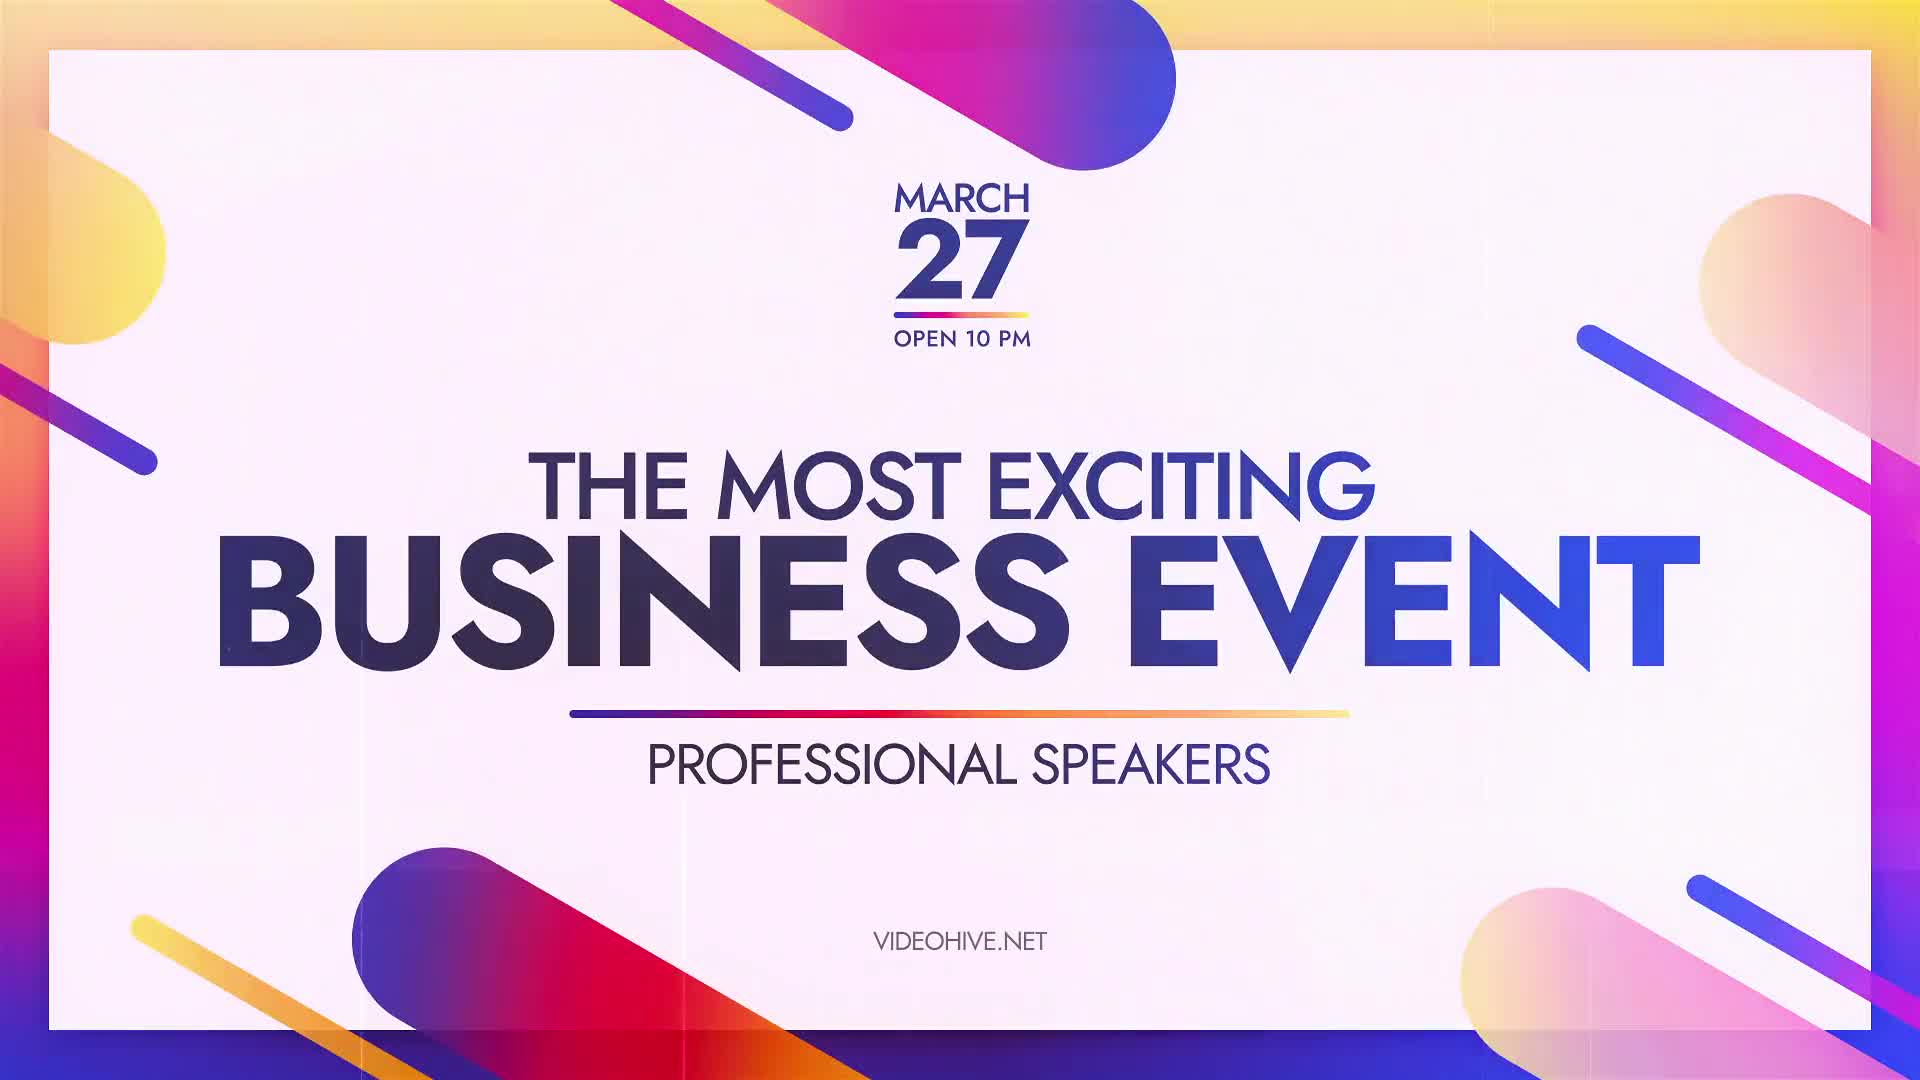 Business Event Promo Videohive 30624576 Premiere Pro Image 1